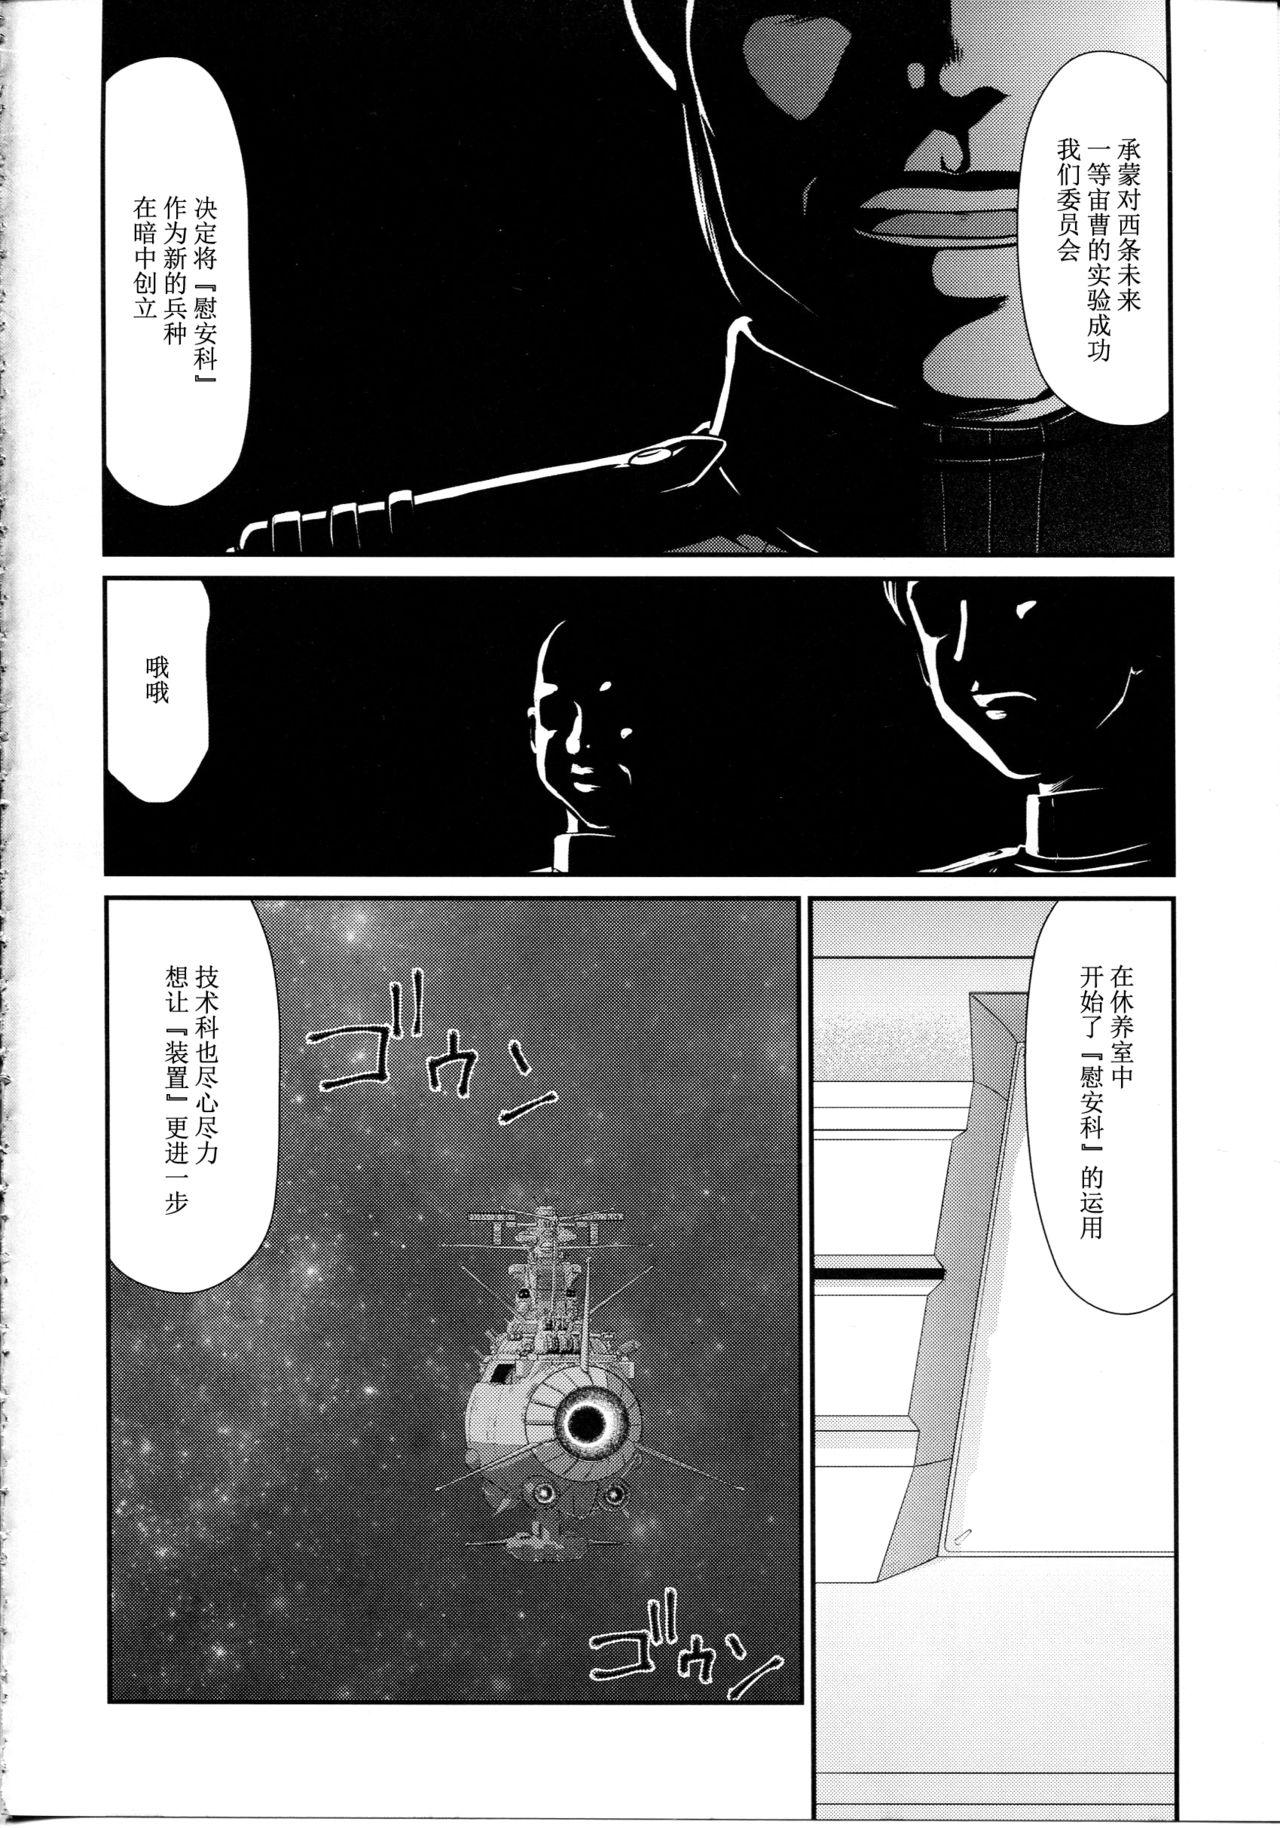 Mulata Yuki no Shizuku - Space battleship yamato 2199 Awesome - Page 9